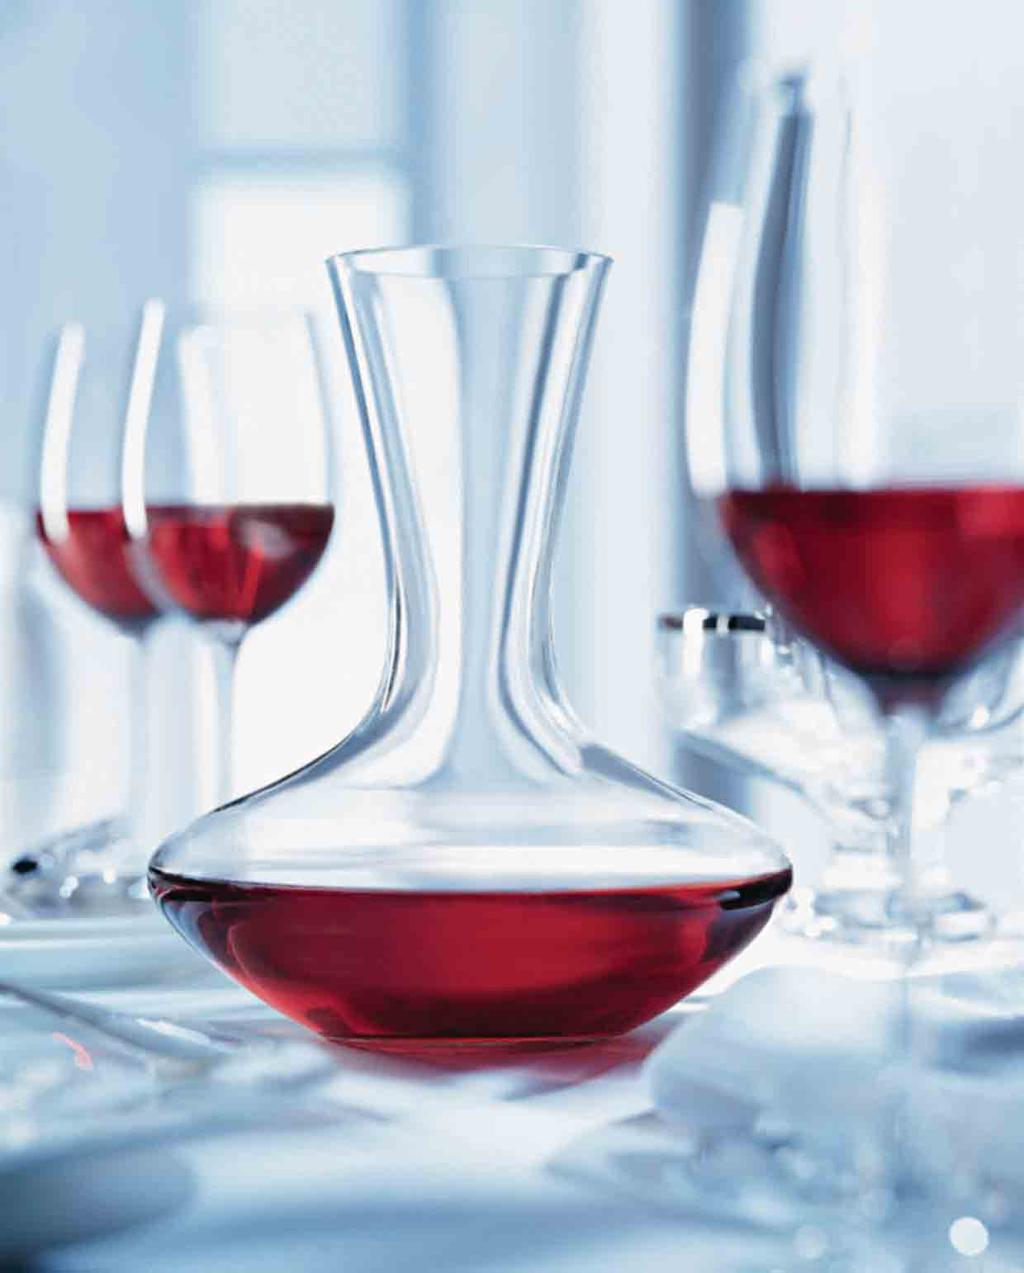 Het perfecte assortiment voor liefhebbers De Vinidor-serie Pagina De Vinidor-serie combineert de voordelen van de wijnbewaar- en wijnklimaatkasten optimaal in één apparaat.